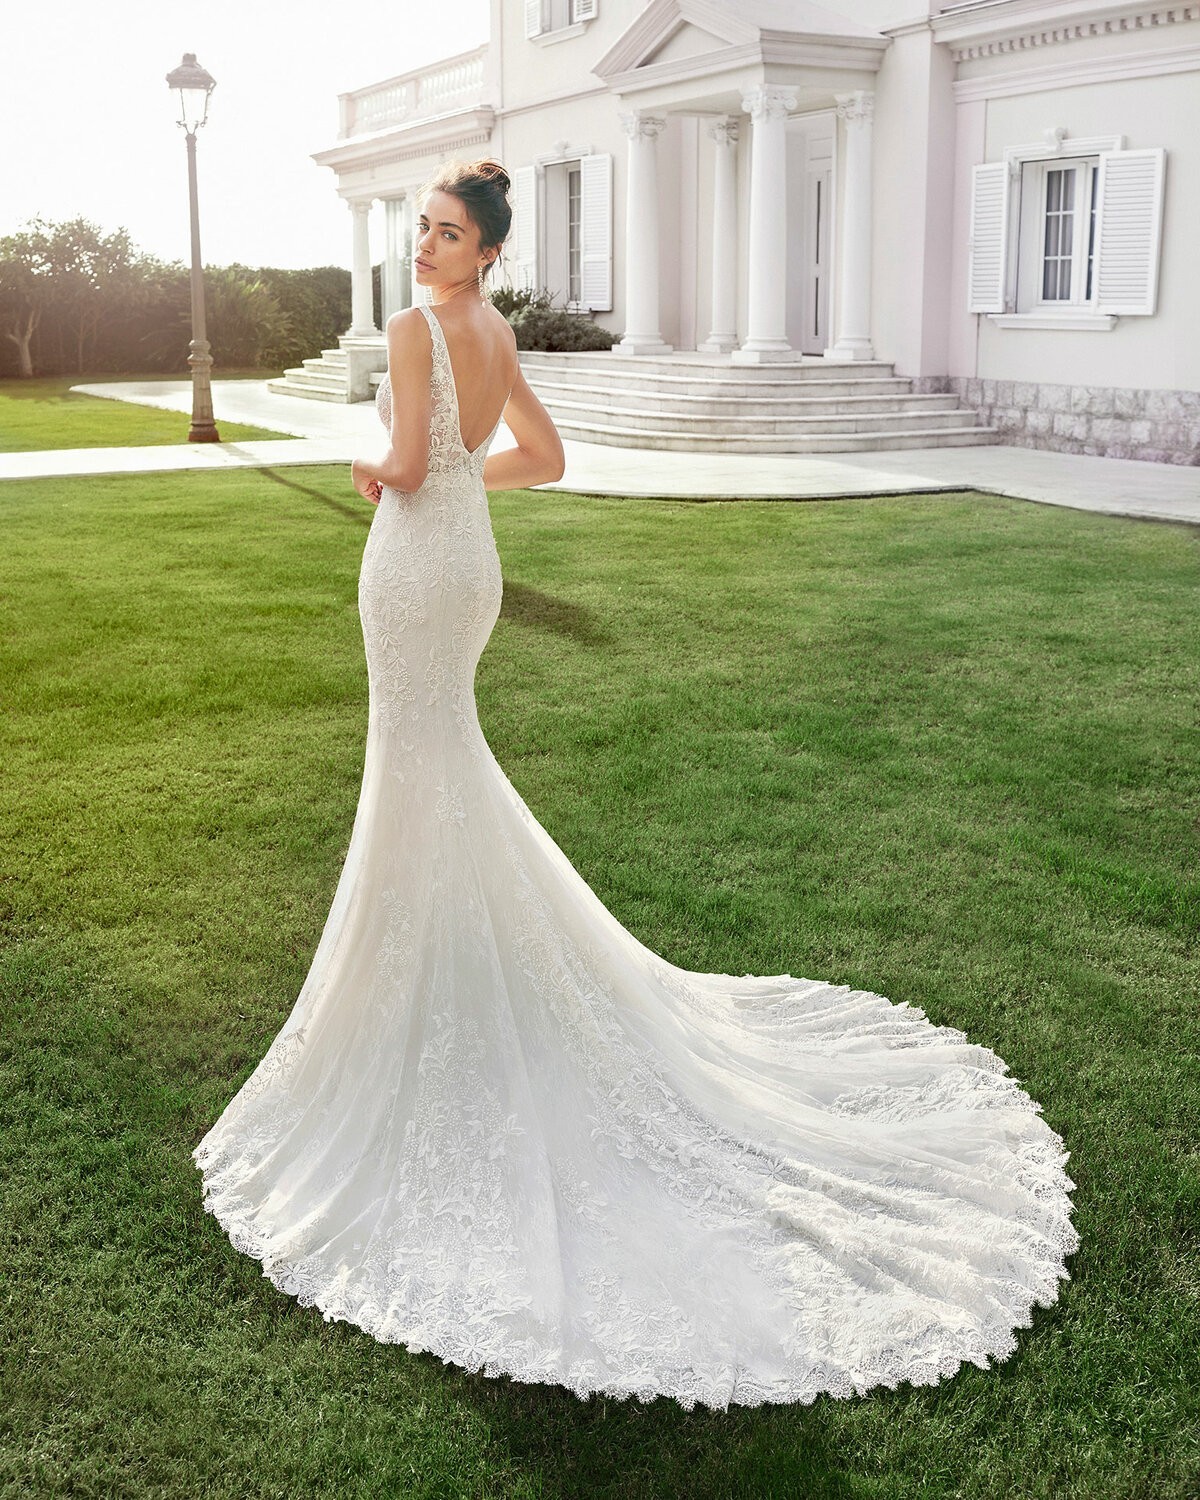 CHENOA - abito da sposa collezione 2020 - Rosa Clarà